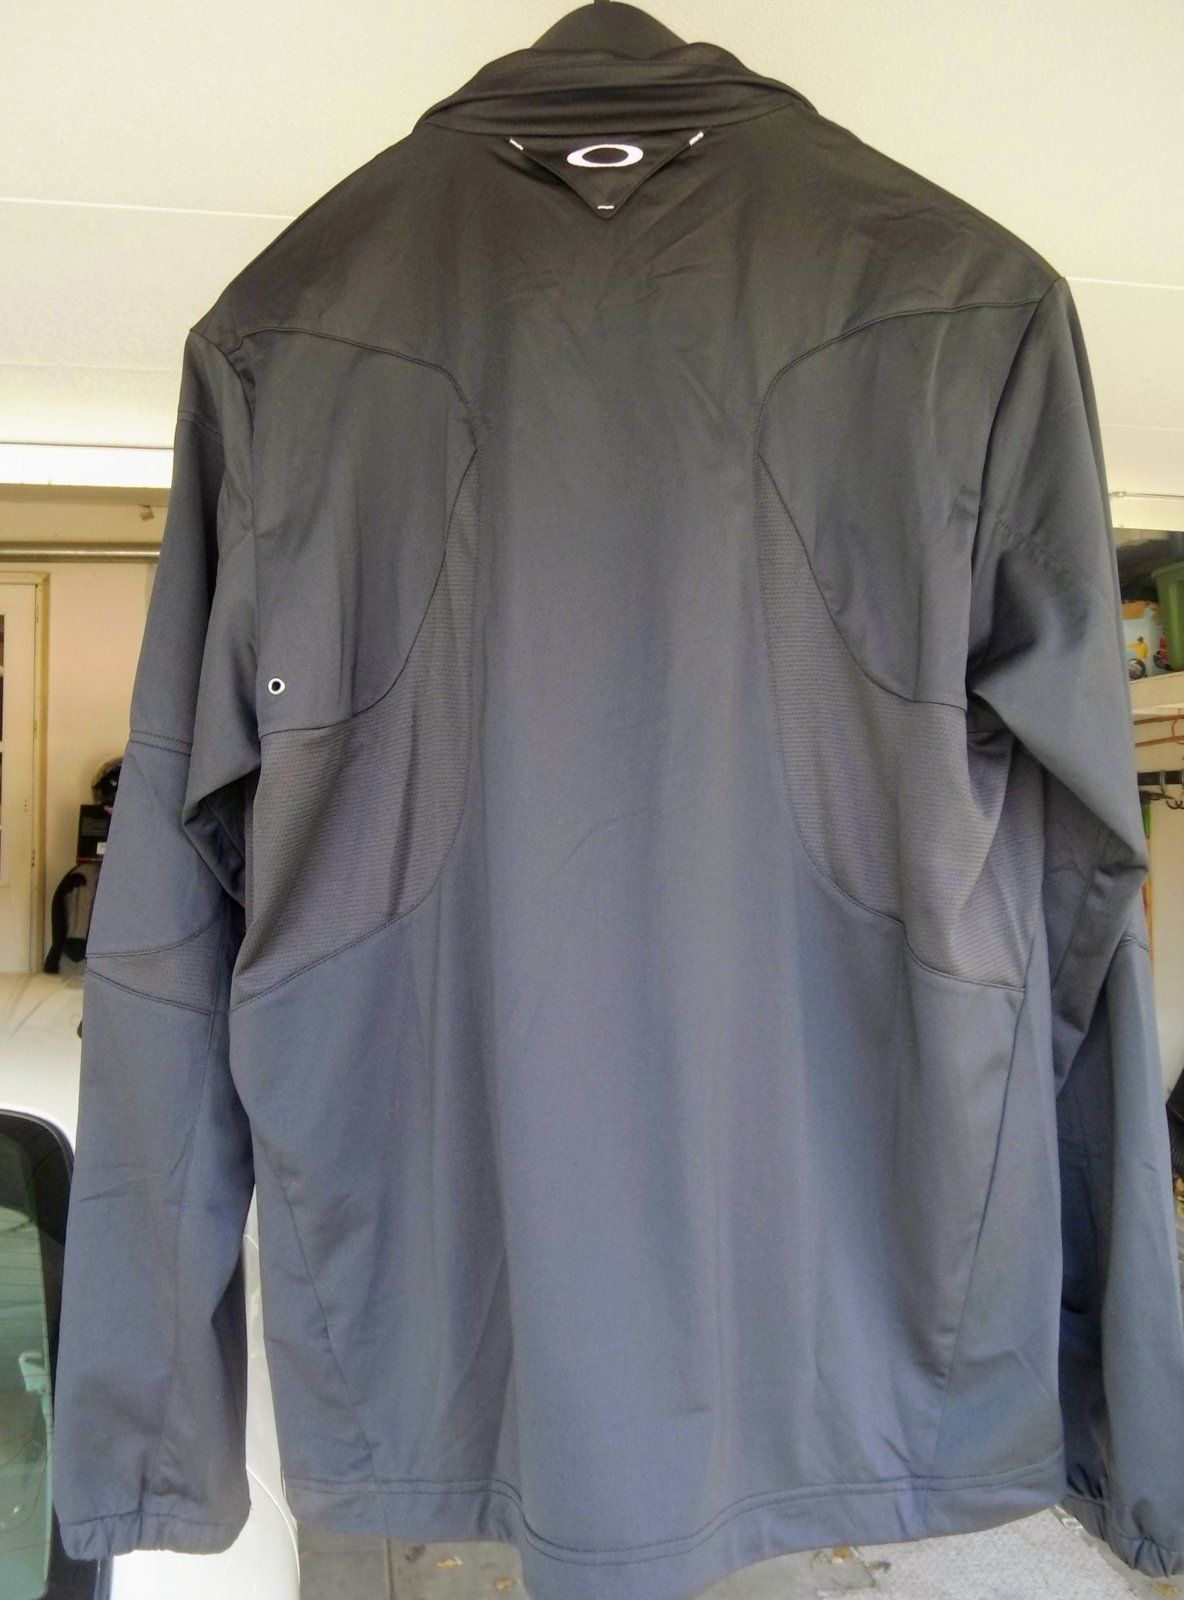 Sold - Skull windless jacket 2.0 | Oakley Forum